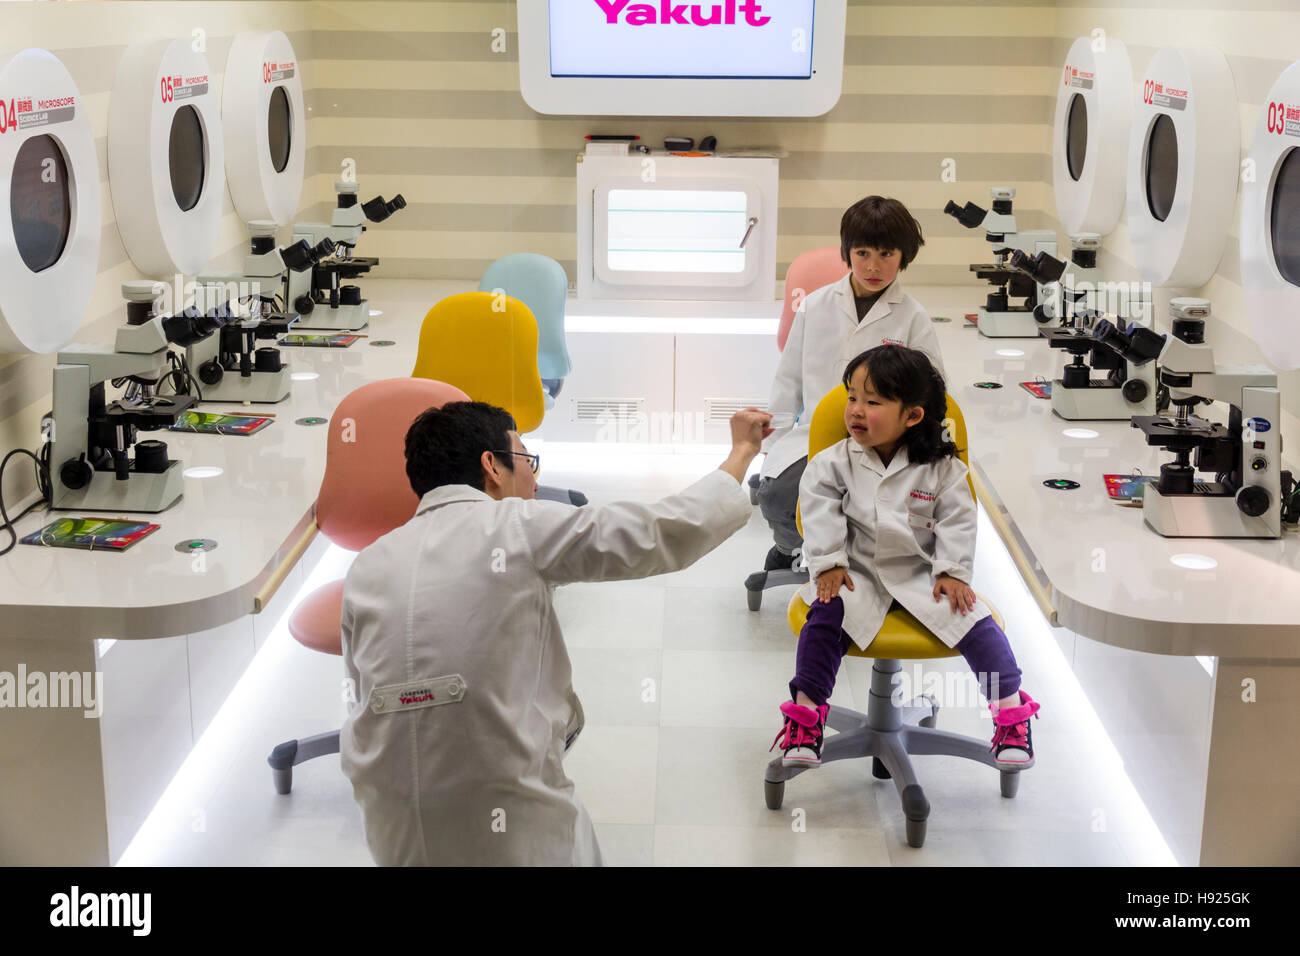 Le Japon, Nishinomiya, KidZania. Parc de jeux pour enfants. 2 enfants, garçon, fille, en blouse blanche de laboratoire blanc assis à l'écoute de conférences en Yakult lab. Banque D'Images